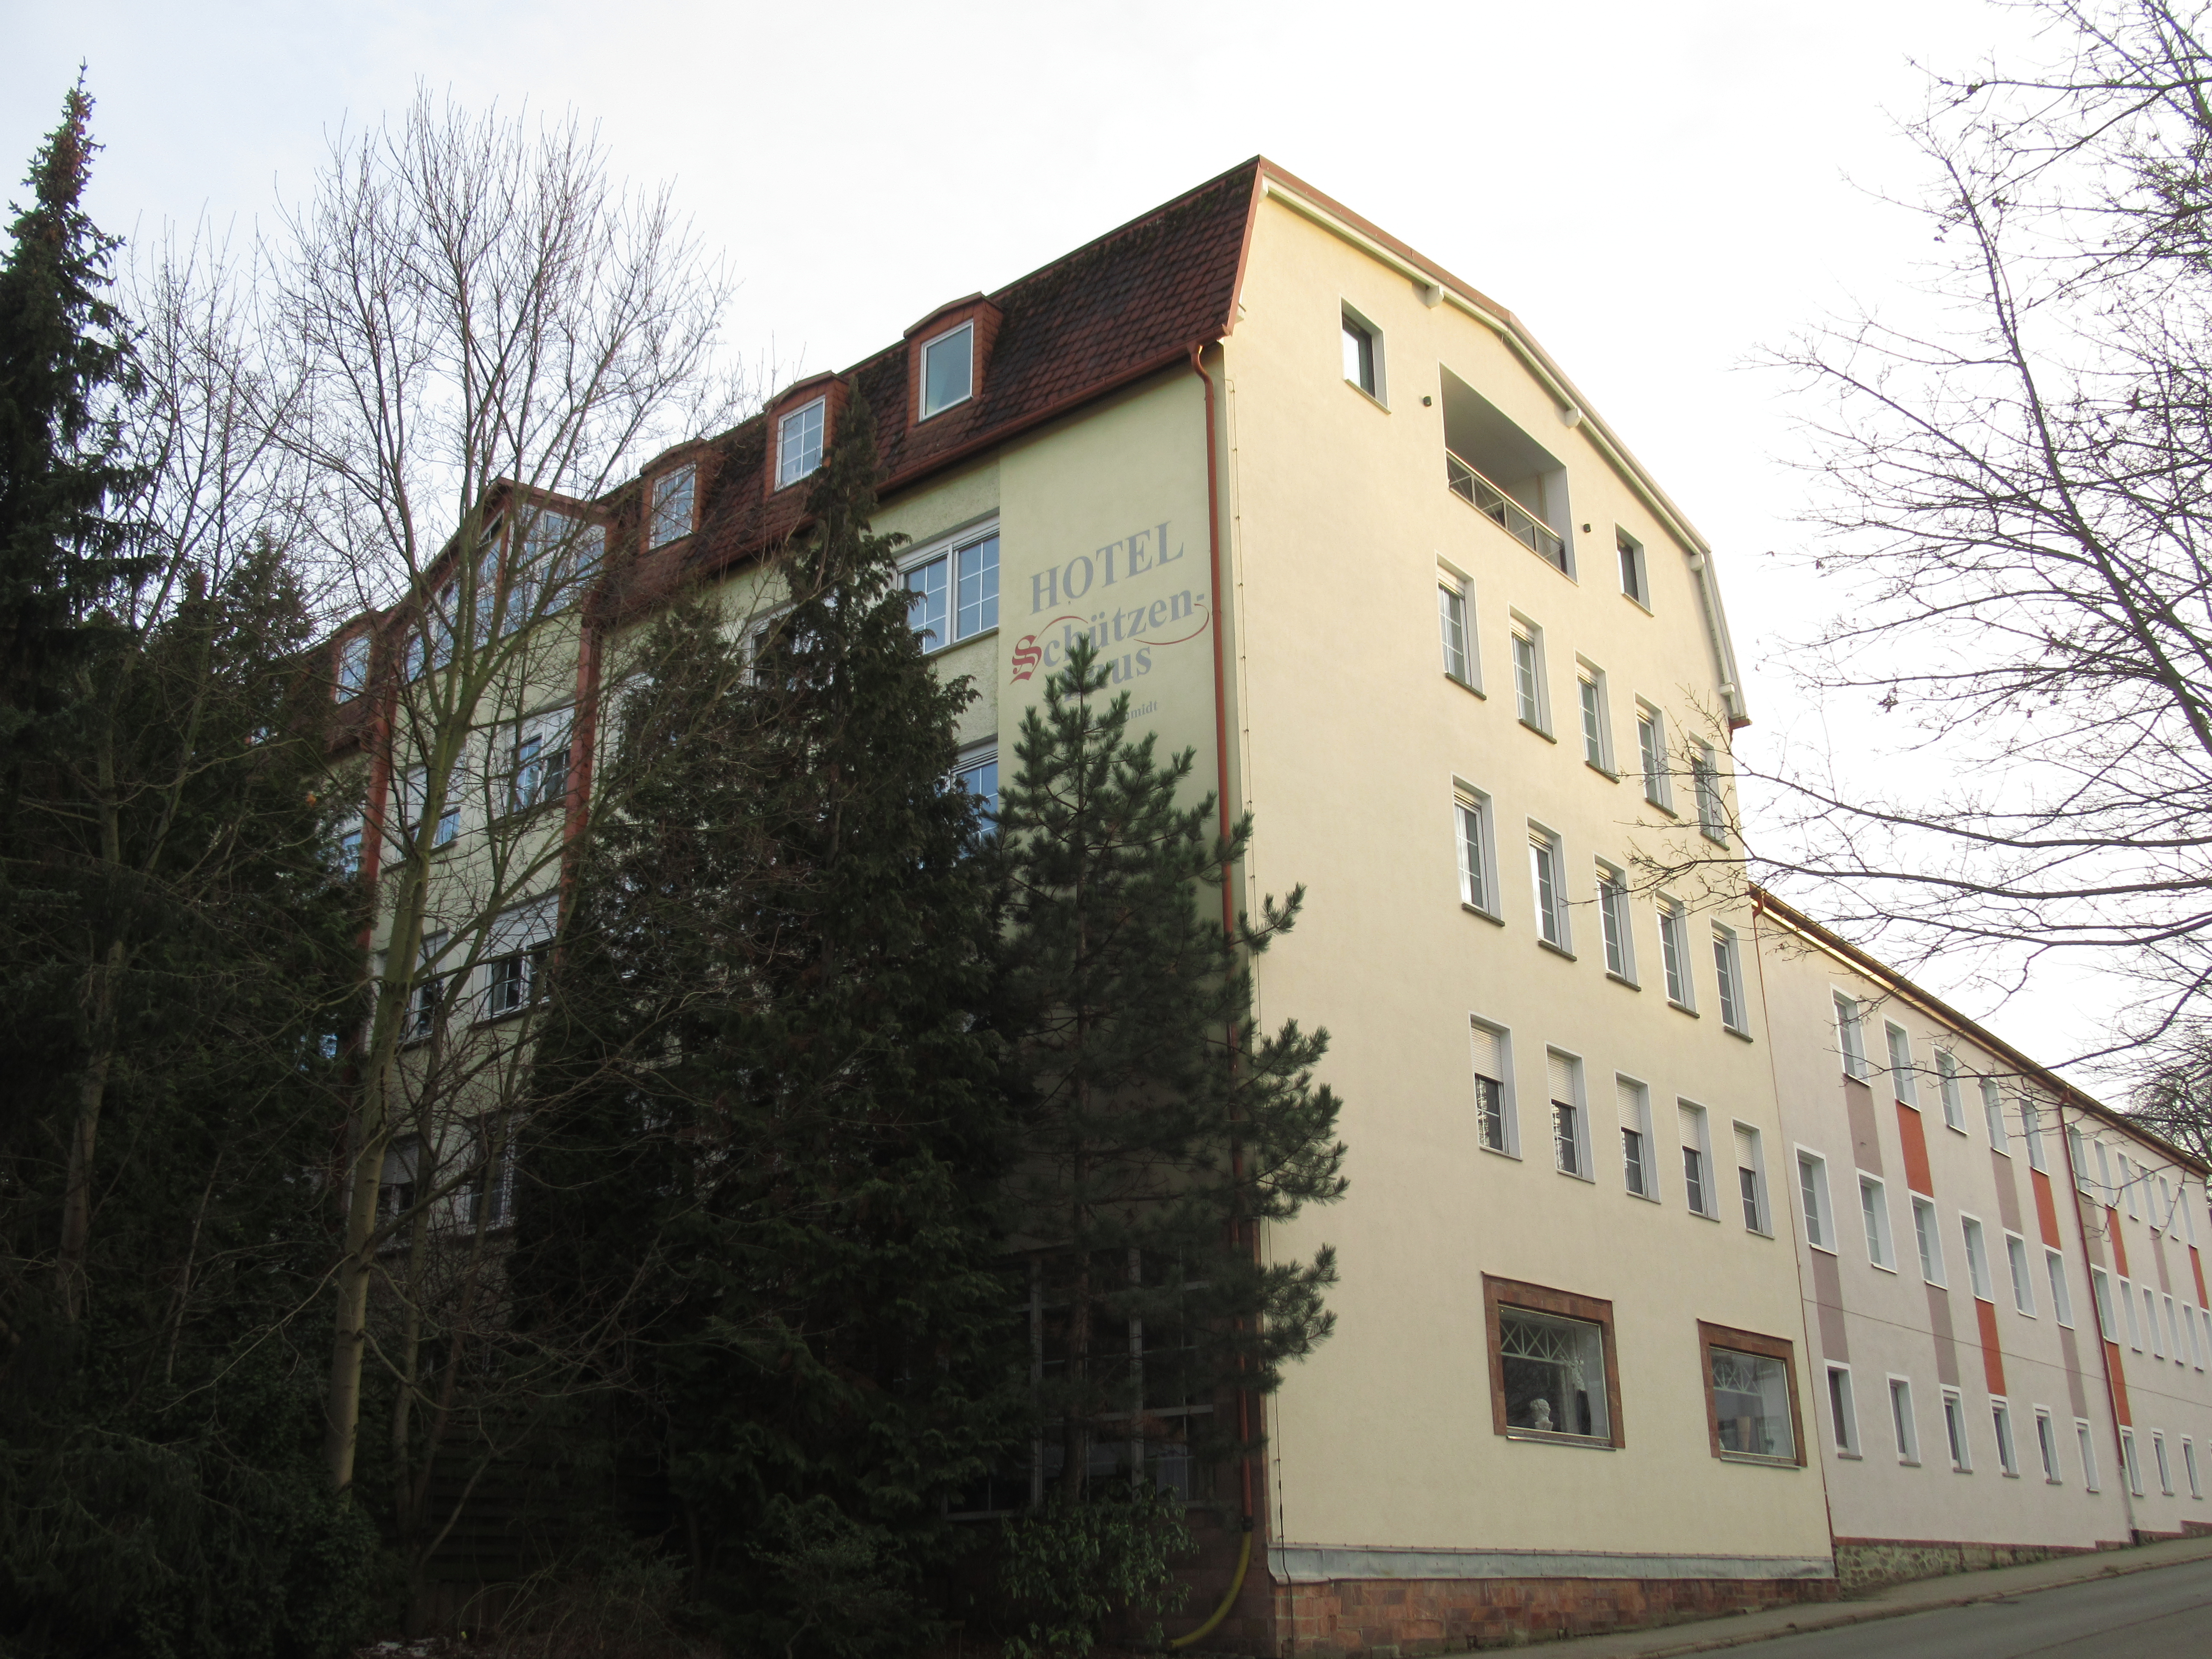 Bild 1 Schützenhaus Betriebsgesellschaft mbH in Wilkau-Haßlau